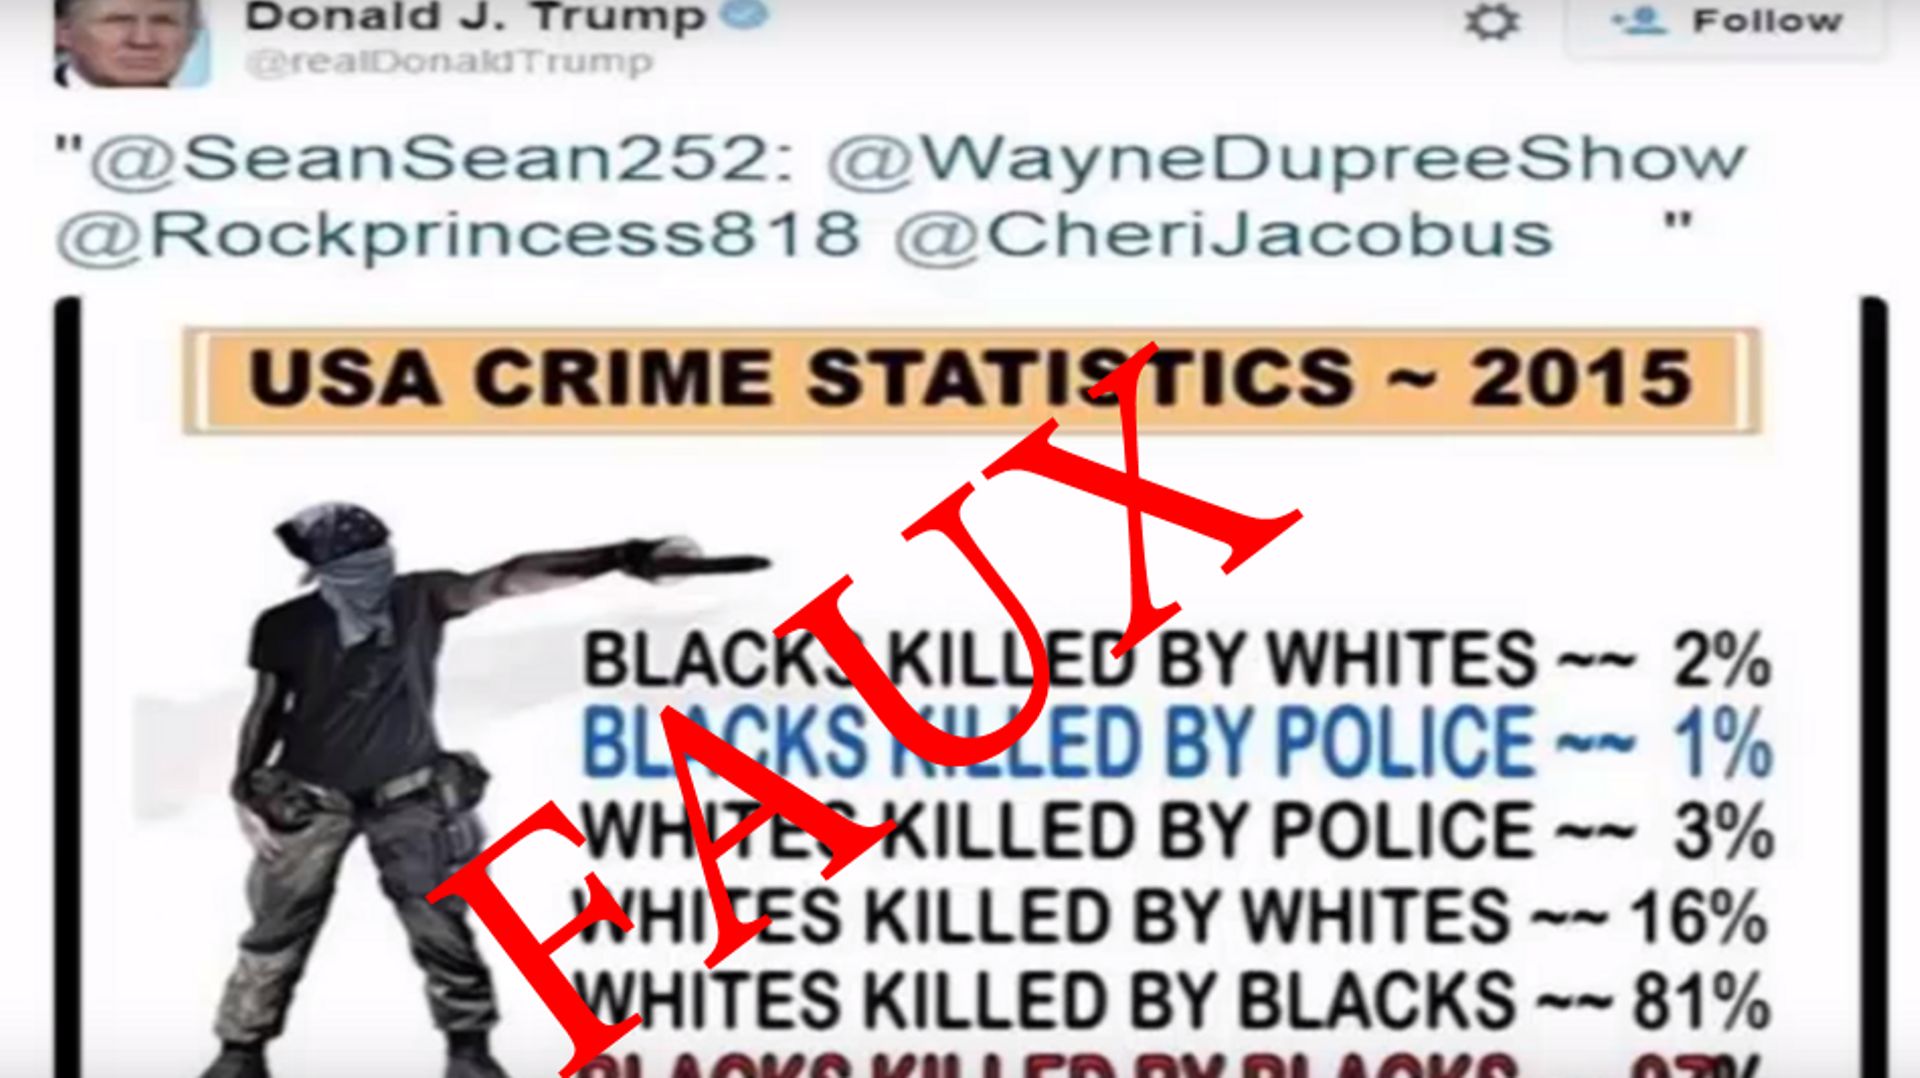 www.youtube.com Tweet de Donald Trump partageant des statistiques infondées